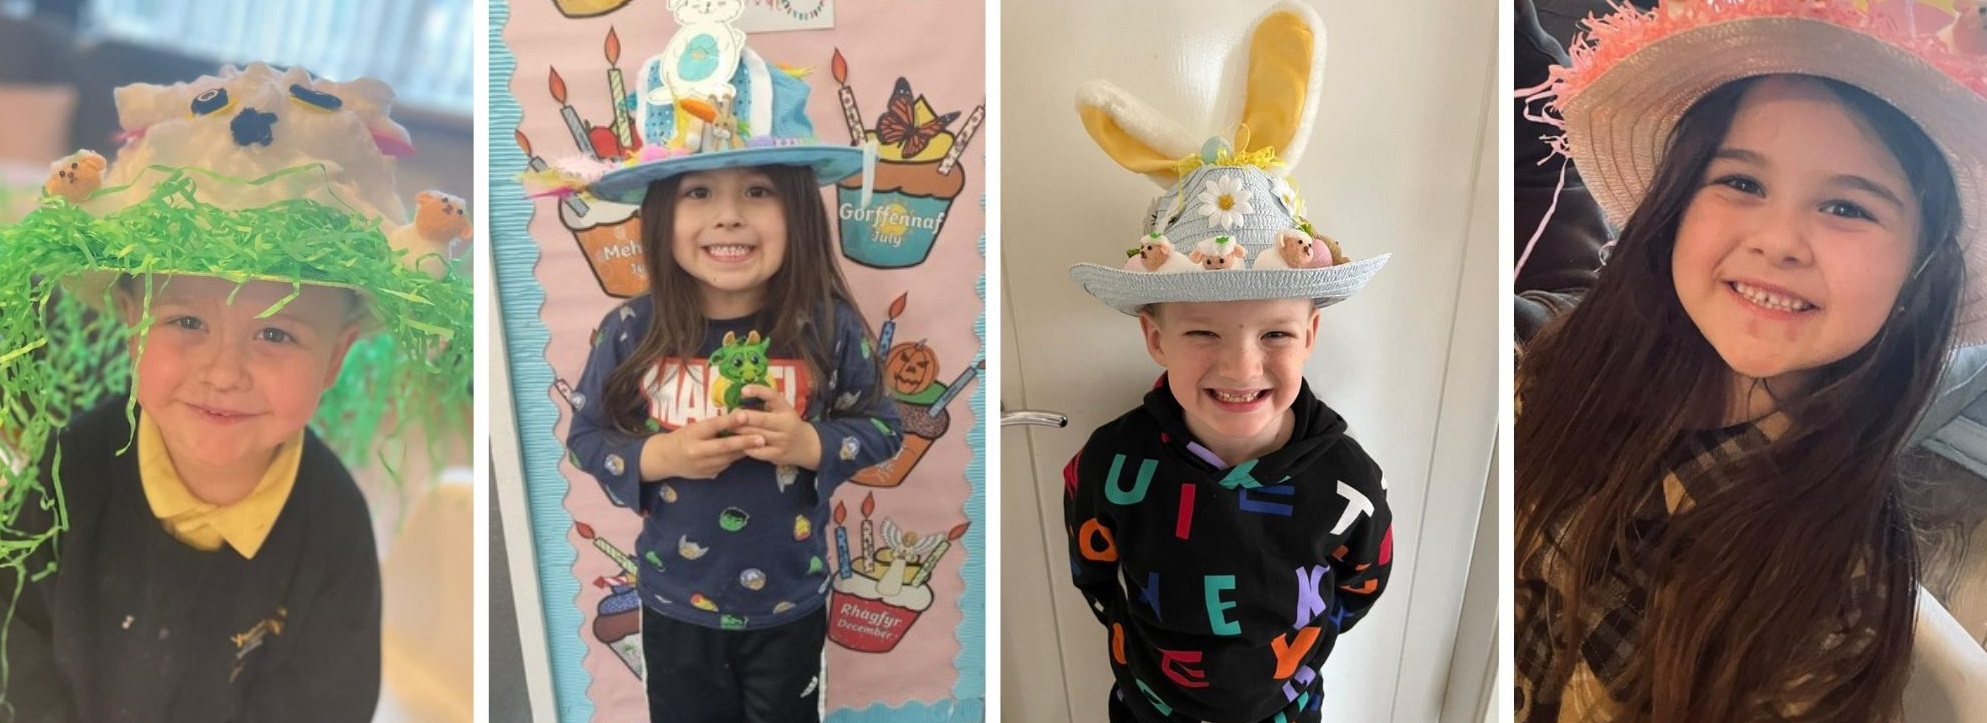 Easter bonnets at Ysgol Heulfan.